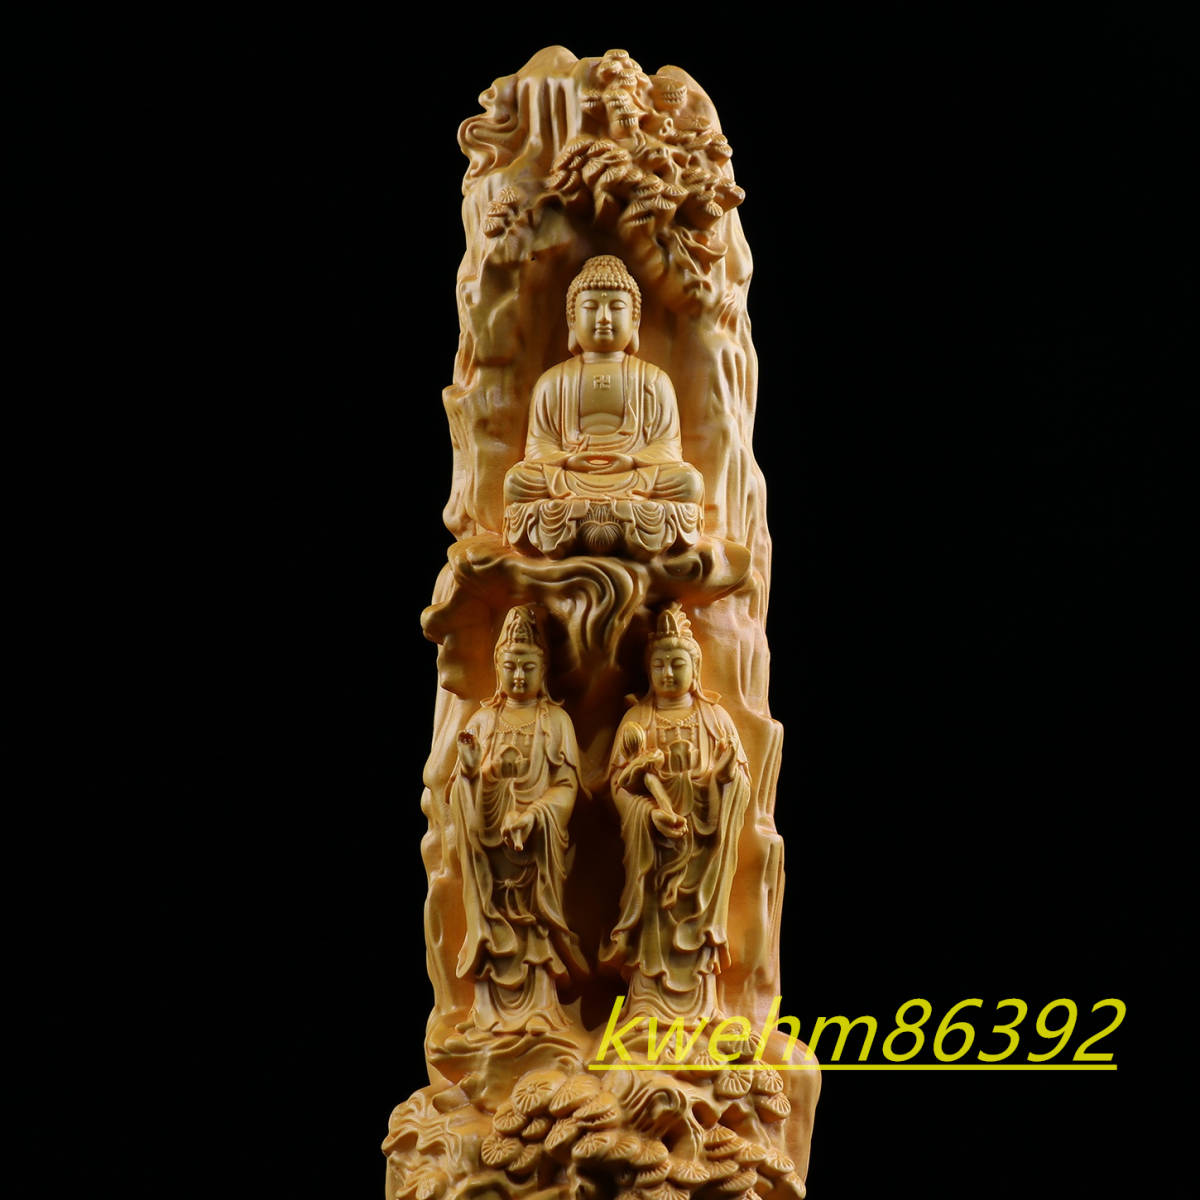 木彫り 仏像 阿弥陀三尊 （観世音菩薩 阿弥陀如来 勢至菩薩）立像 柘植材 仏教工芸 精密彫刻 ご利益